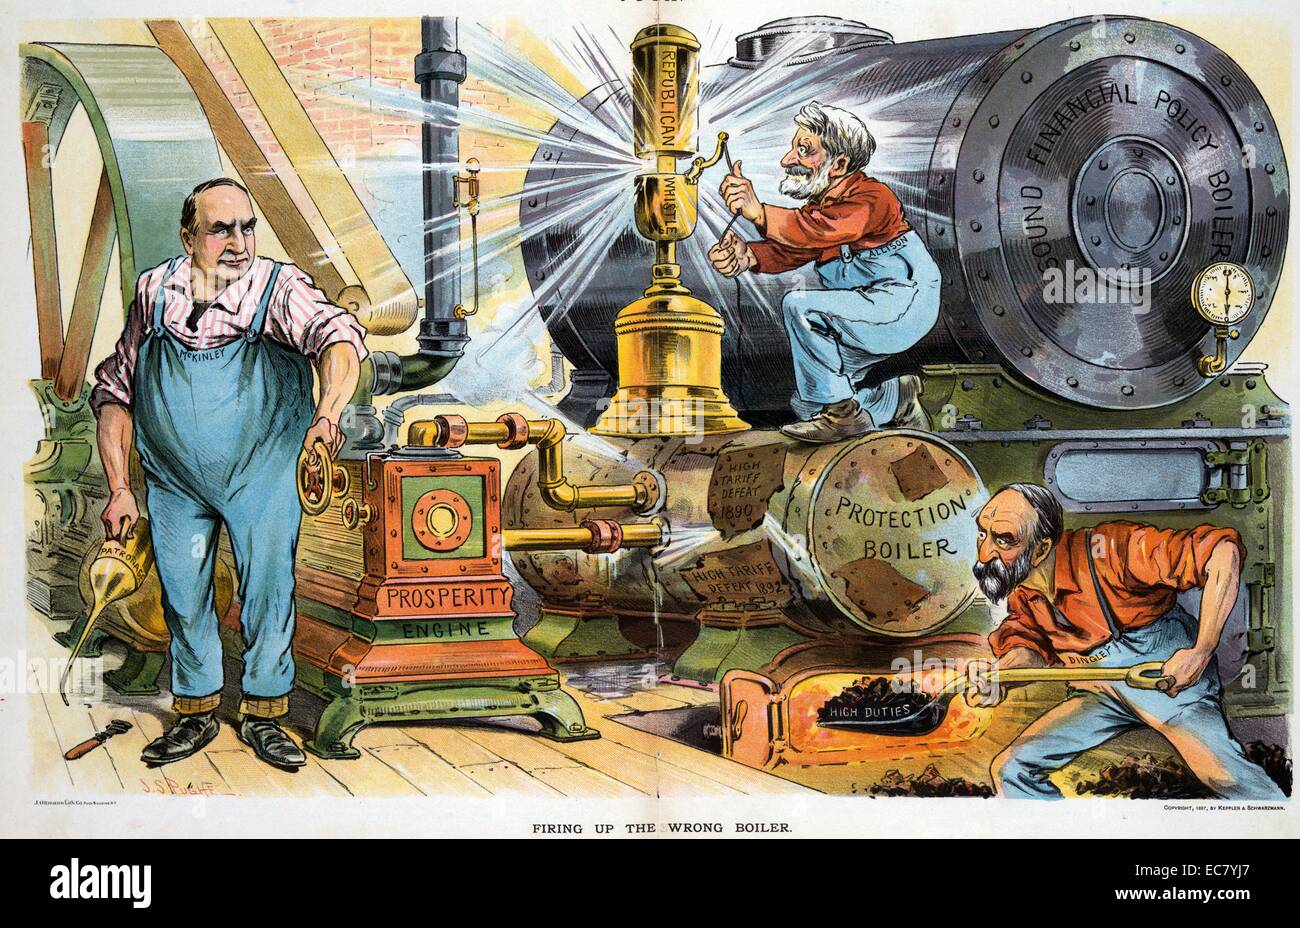 La cottura di sbagliato caldaia' Presidente McKinley tenendo un olio può essere etichettata come "Patrocinio' e girando la manovella su un 'prosperità motore' mentre Nelson Dingley pale del carbone in un danneggiato "Protezione caldaia" etichettato 'tariffa alta sconfitta 1890' e 'tariffa alta sconfitta 1892', che è prossima ad una nuova di zecca e caldaia inutilizzato etichettato "una sana politica finanziaria caldaia"; William B. Allison tira la maniglia su un grande ottone 'fischio repubblicana". Foto Stock